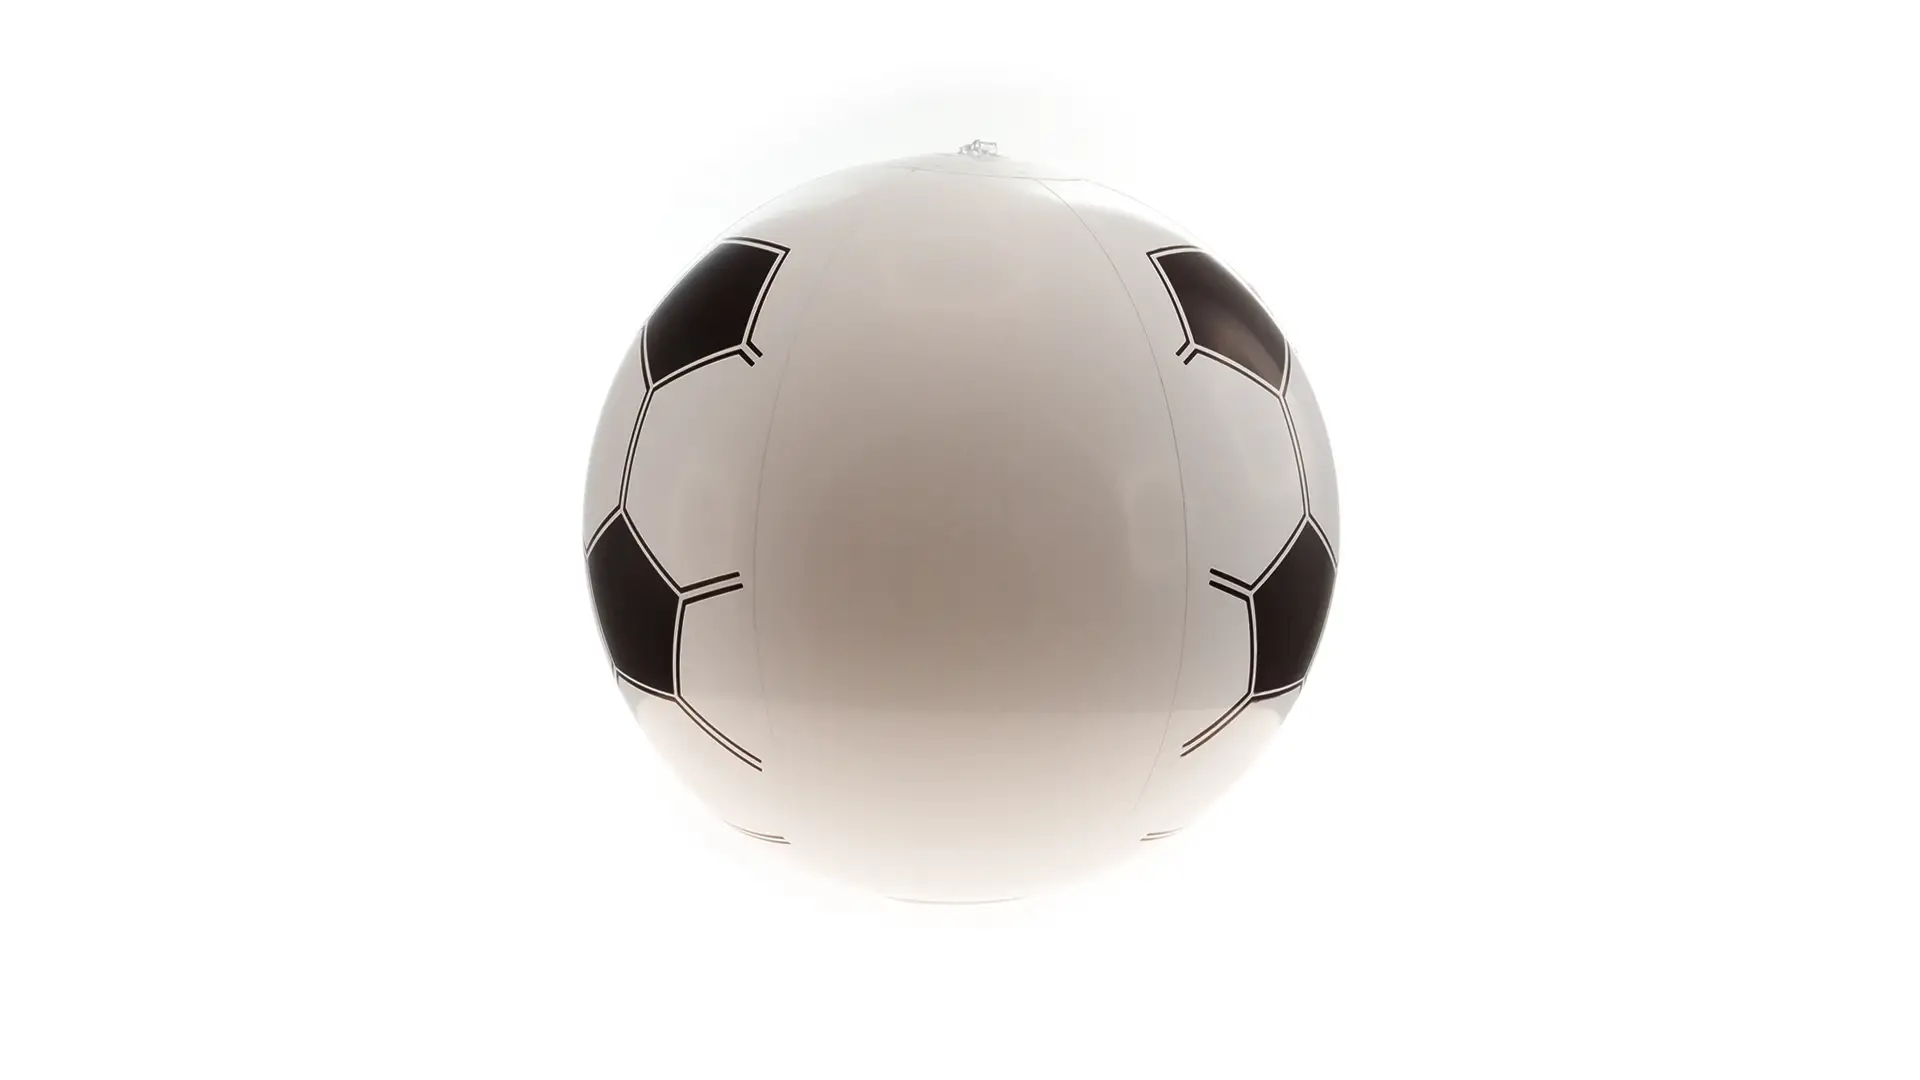 Pallone Gonfiabile in PVC Personalizzato Ideale come Gadget Piscina, Eventi, Feste 